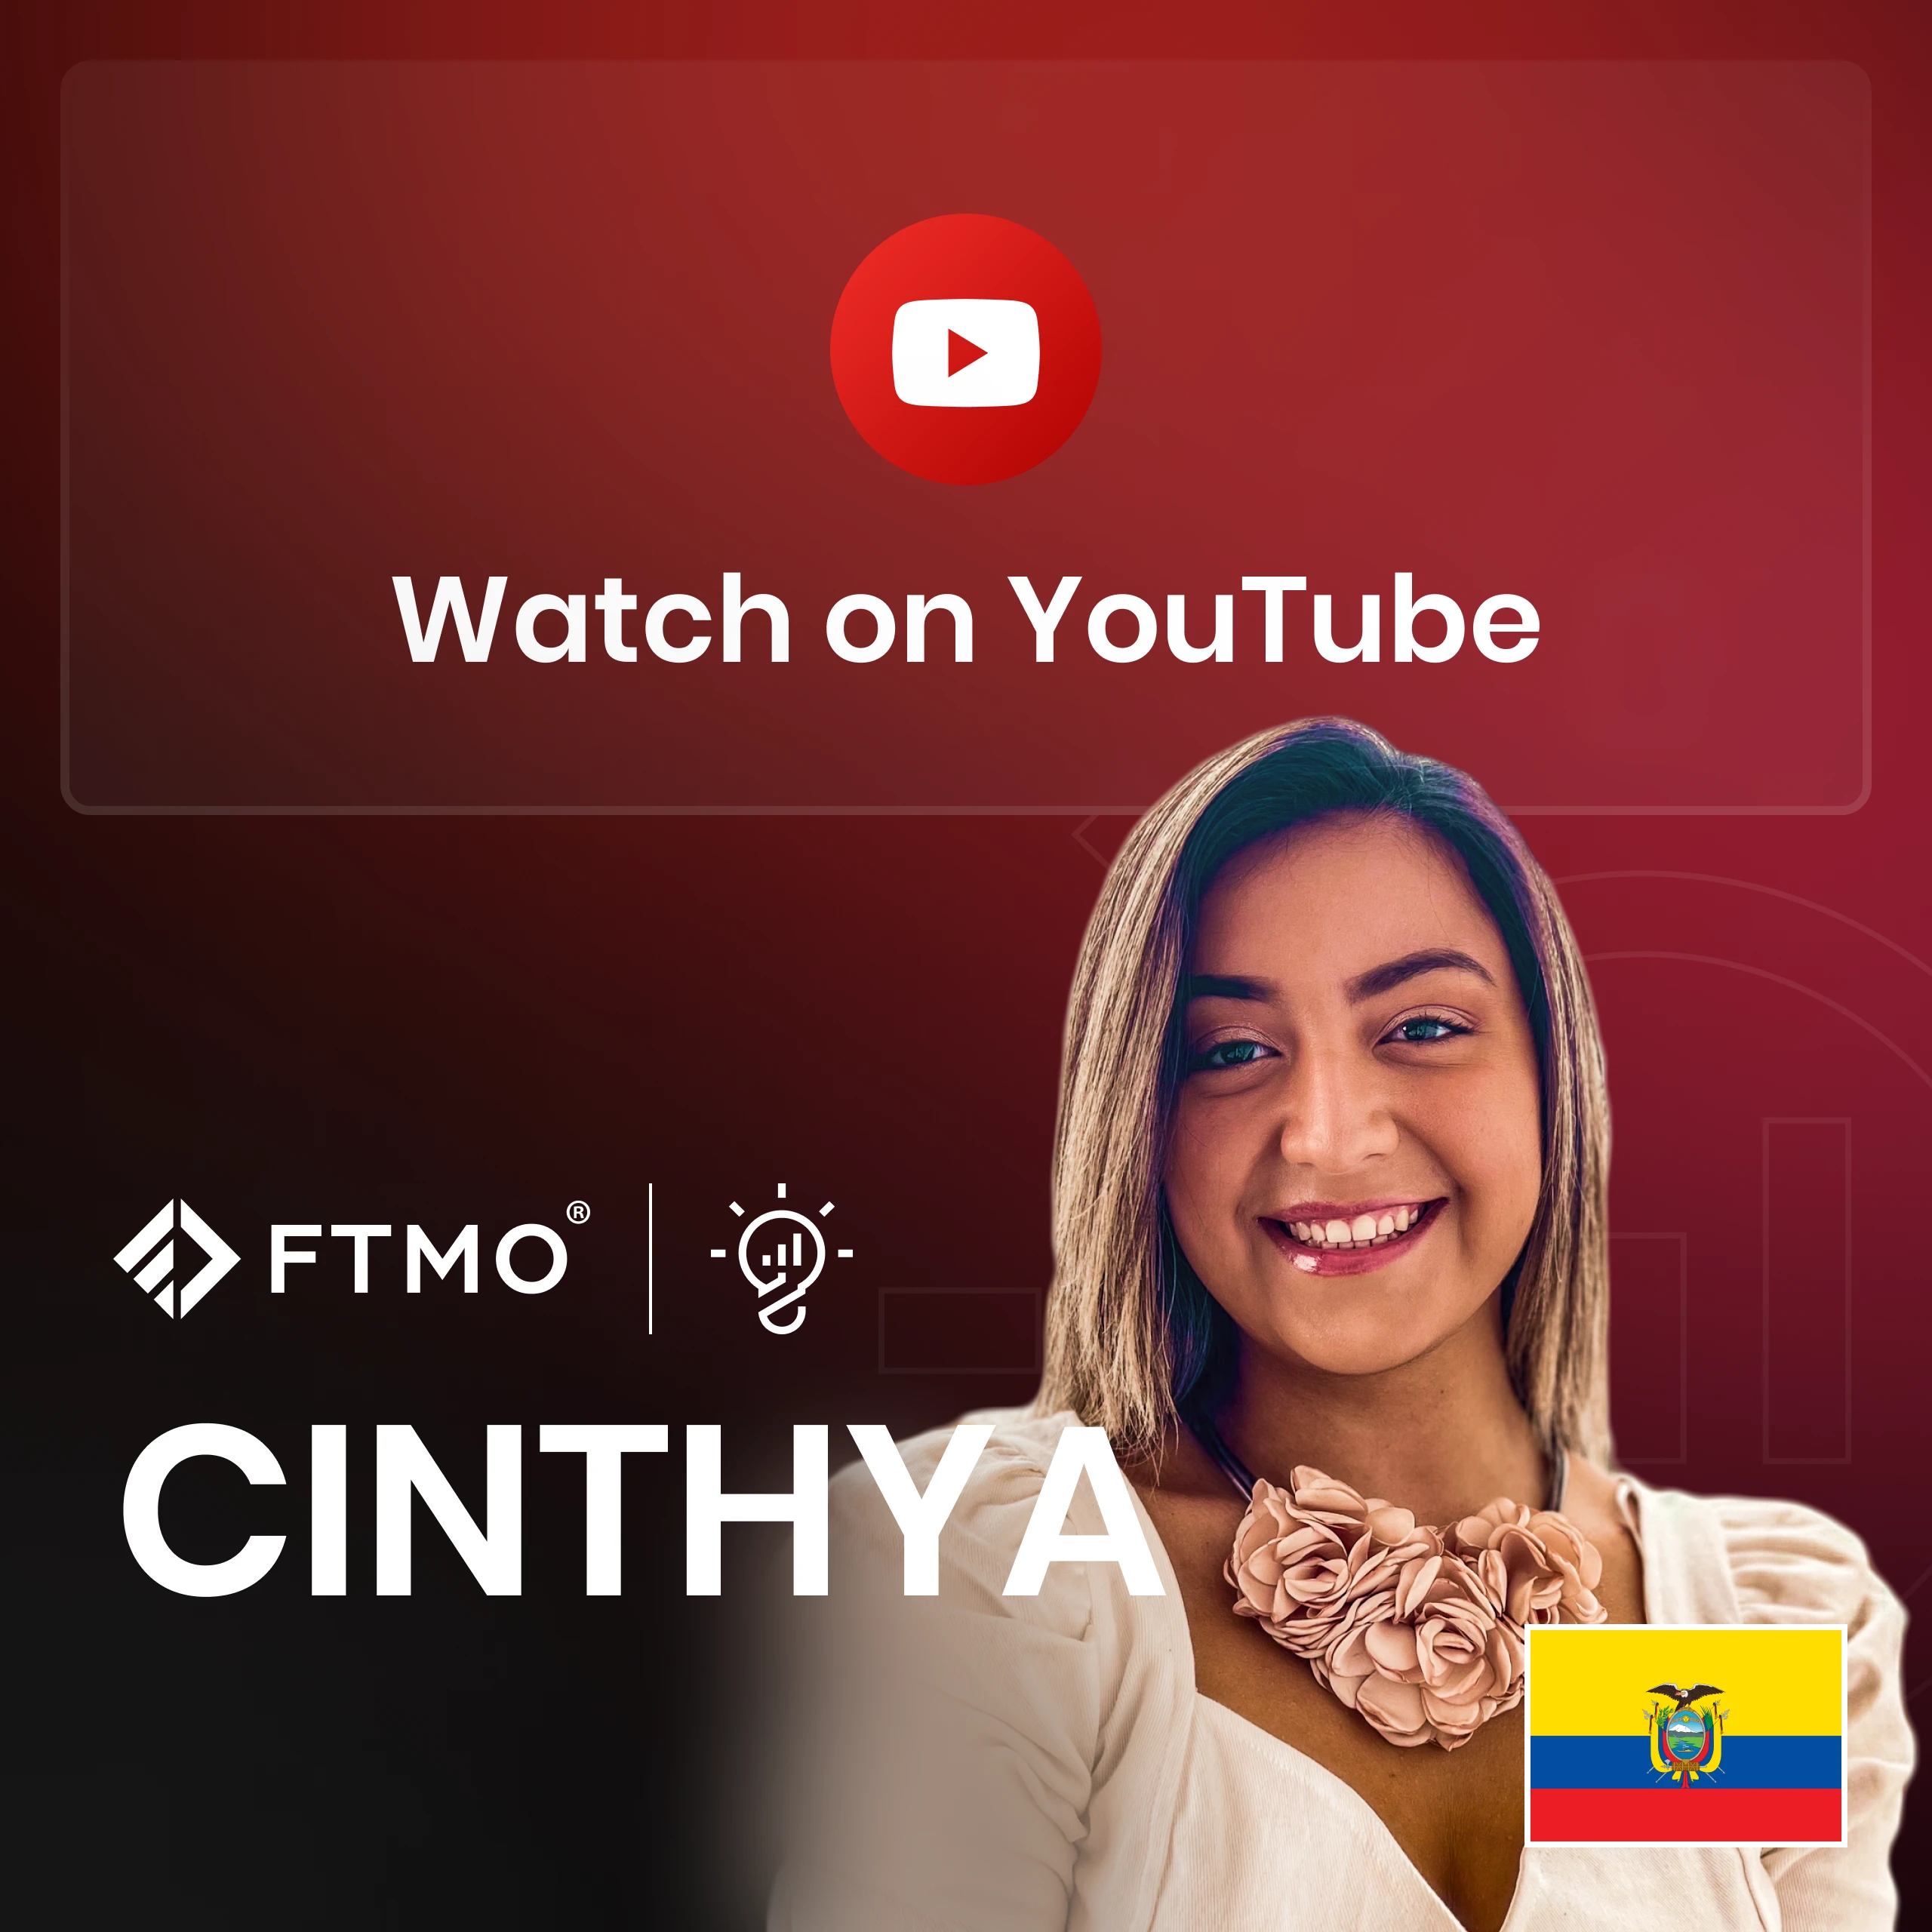 Cinthya from Ecuador